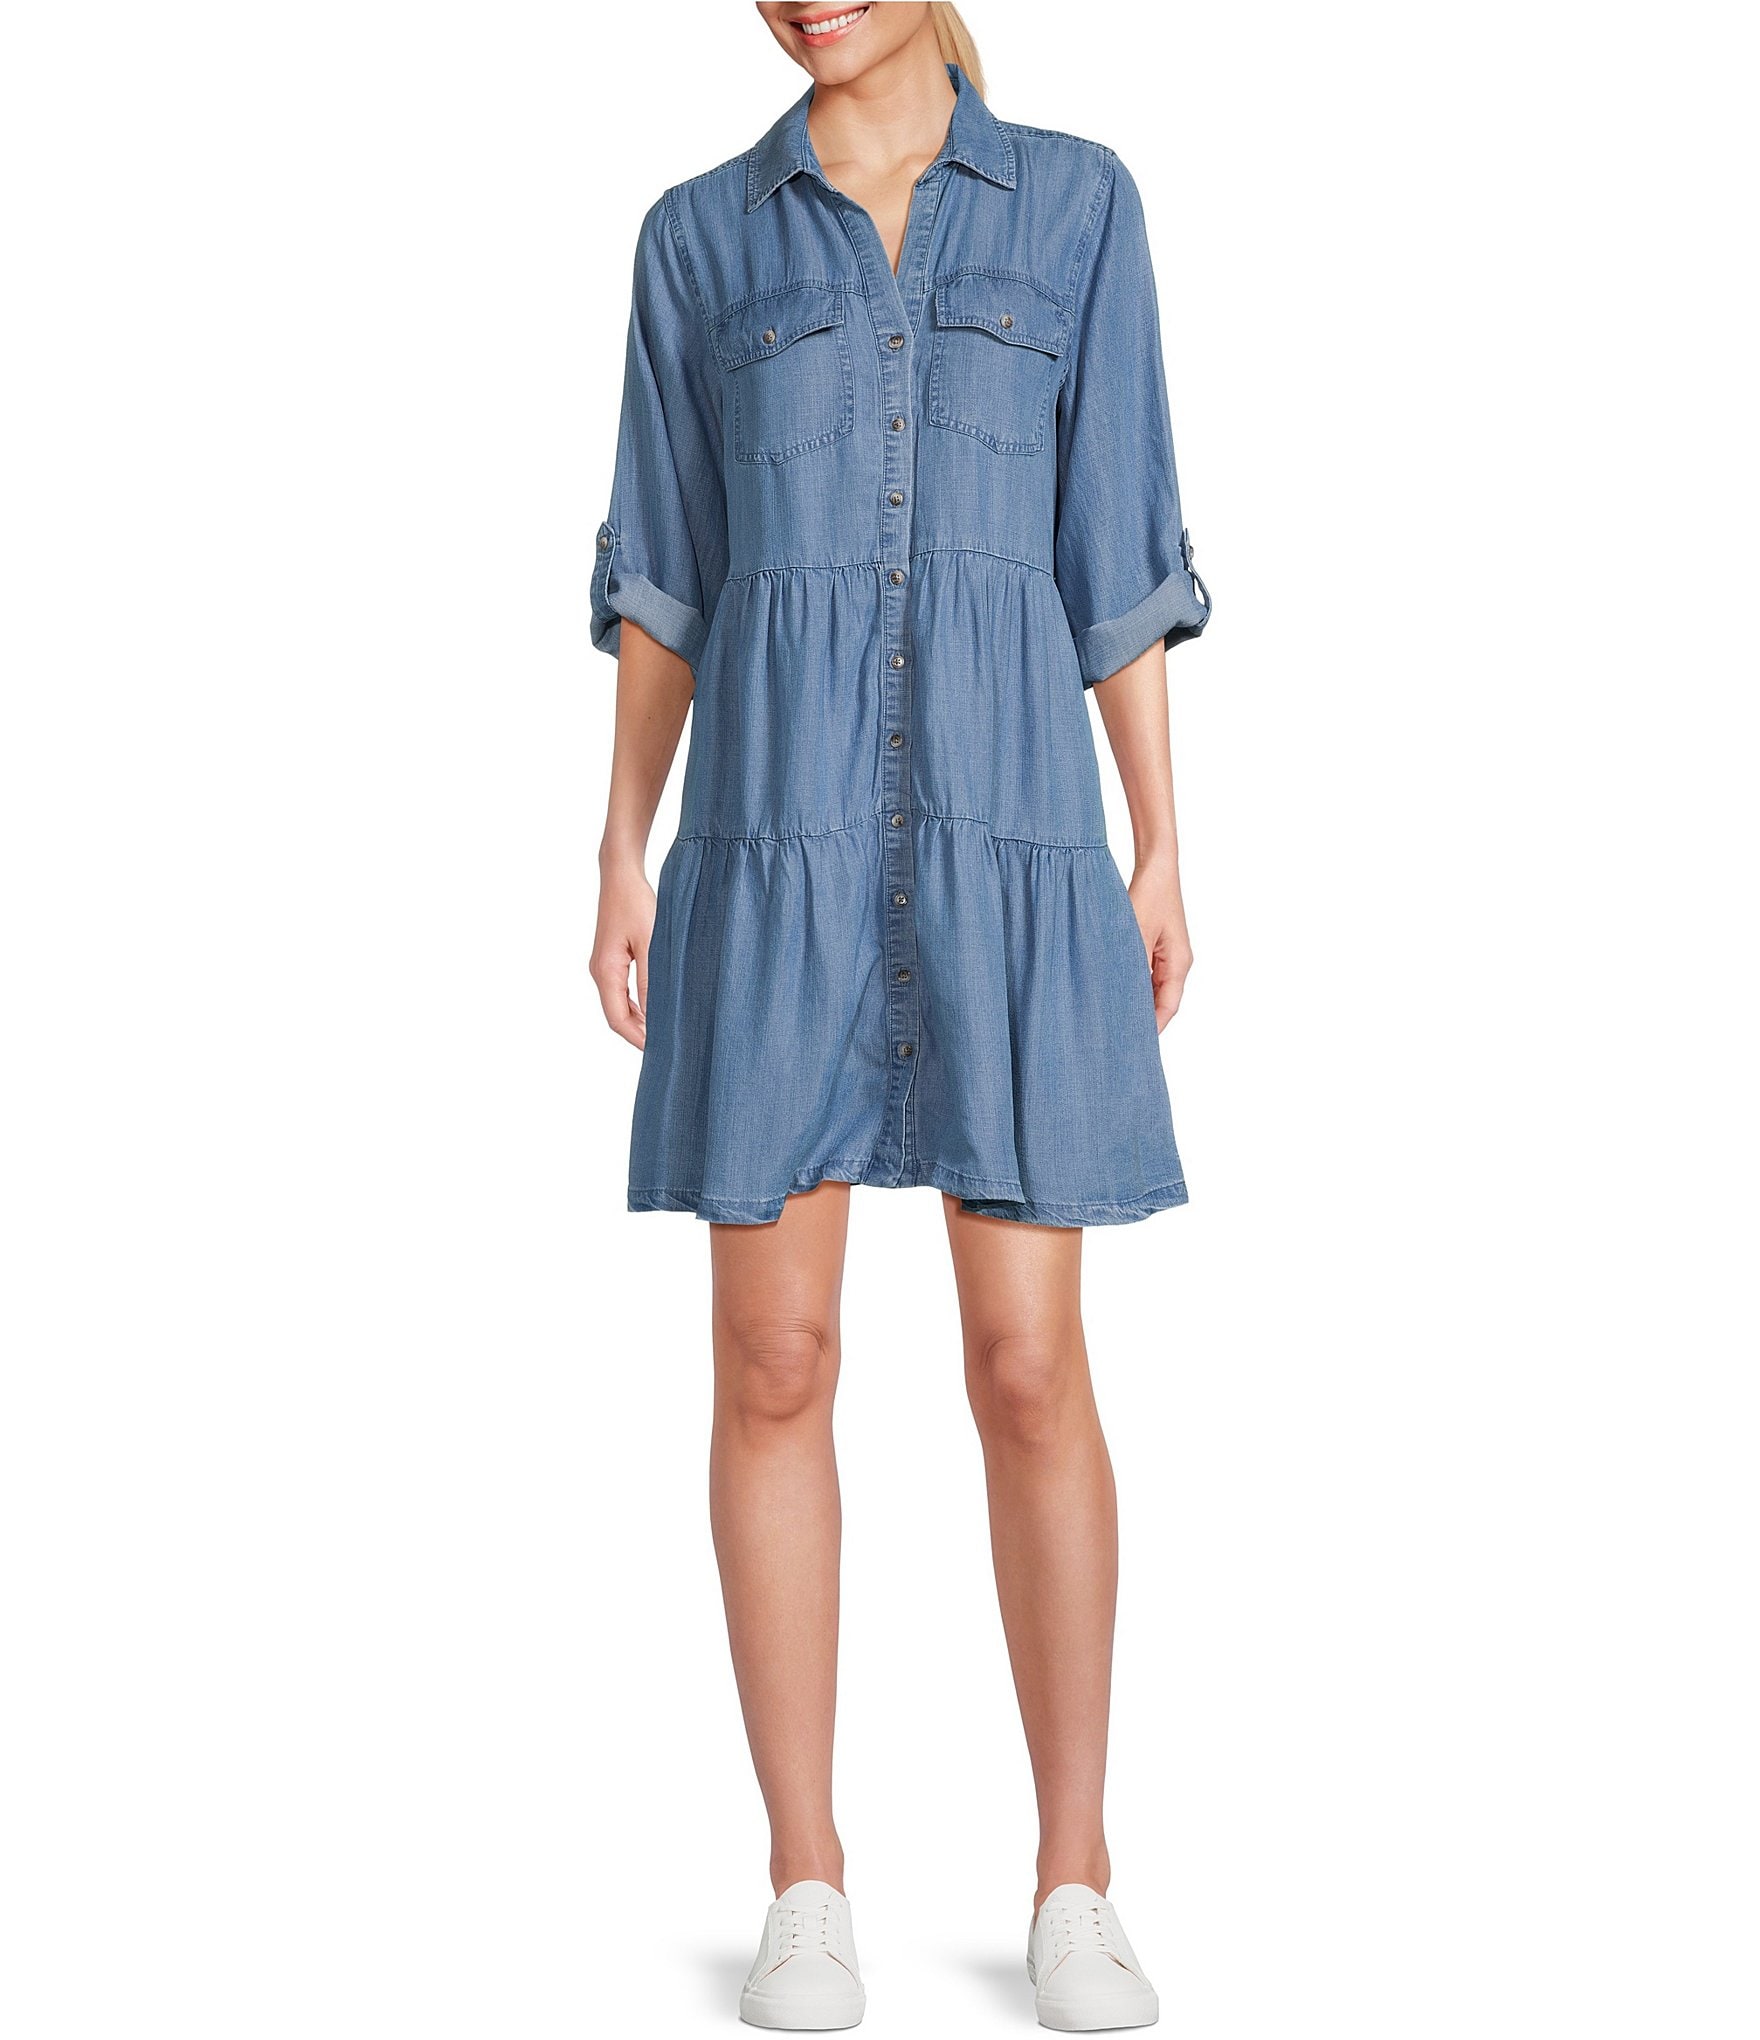 Nurture by Westbound 3/4 Sleeve Tired Shirt Dress | Dillard's